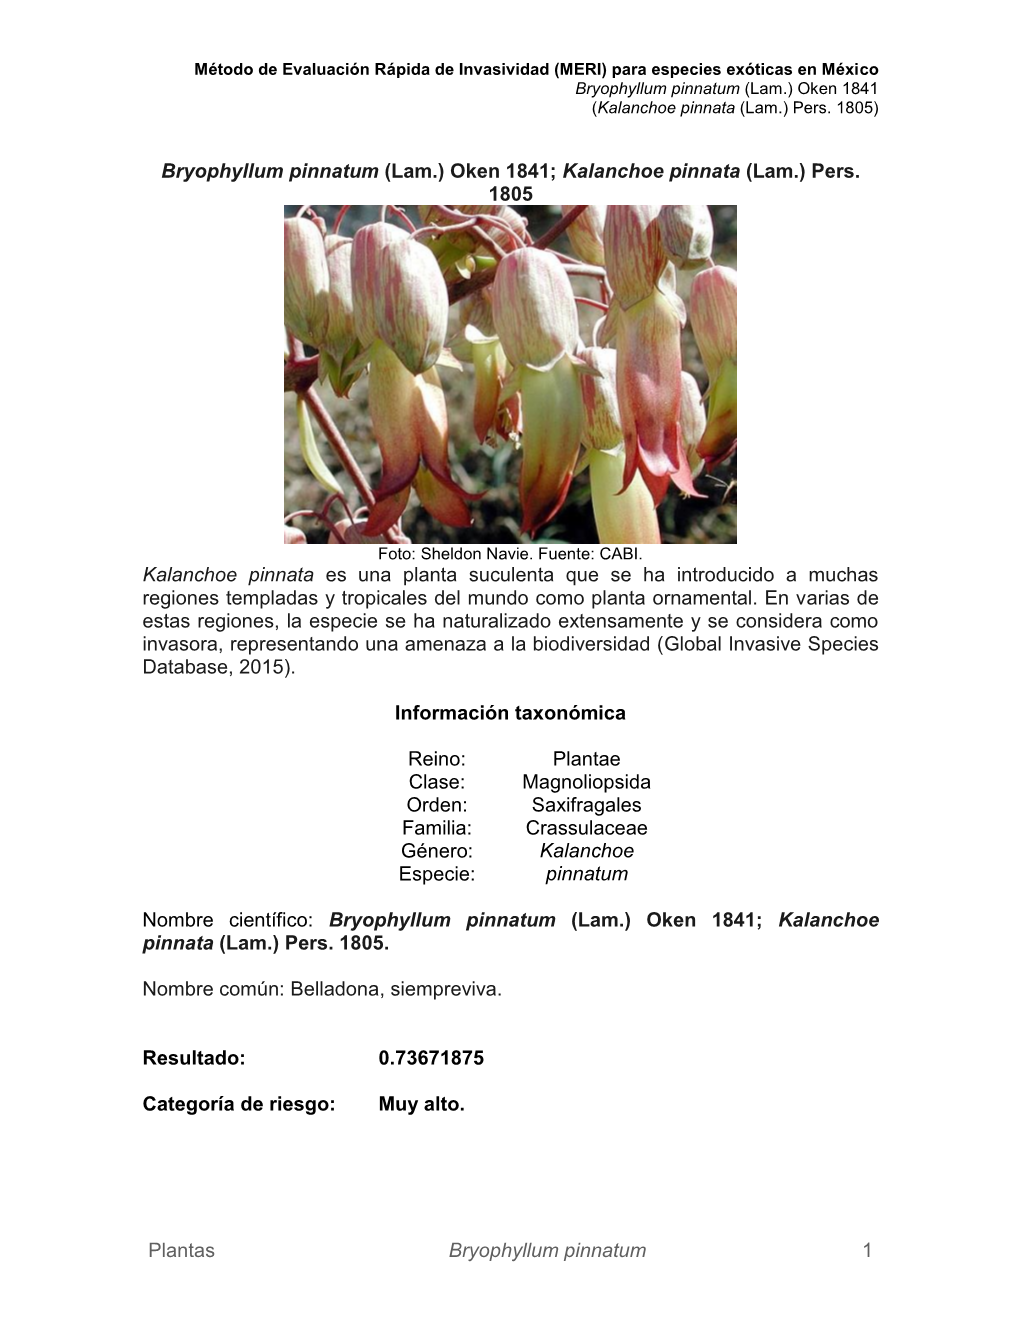 Bryophyllum Pinnatum (Lam.) Oken 1841; Kalanchoe Pinnata (Lam.) Pers